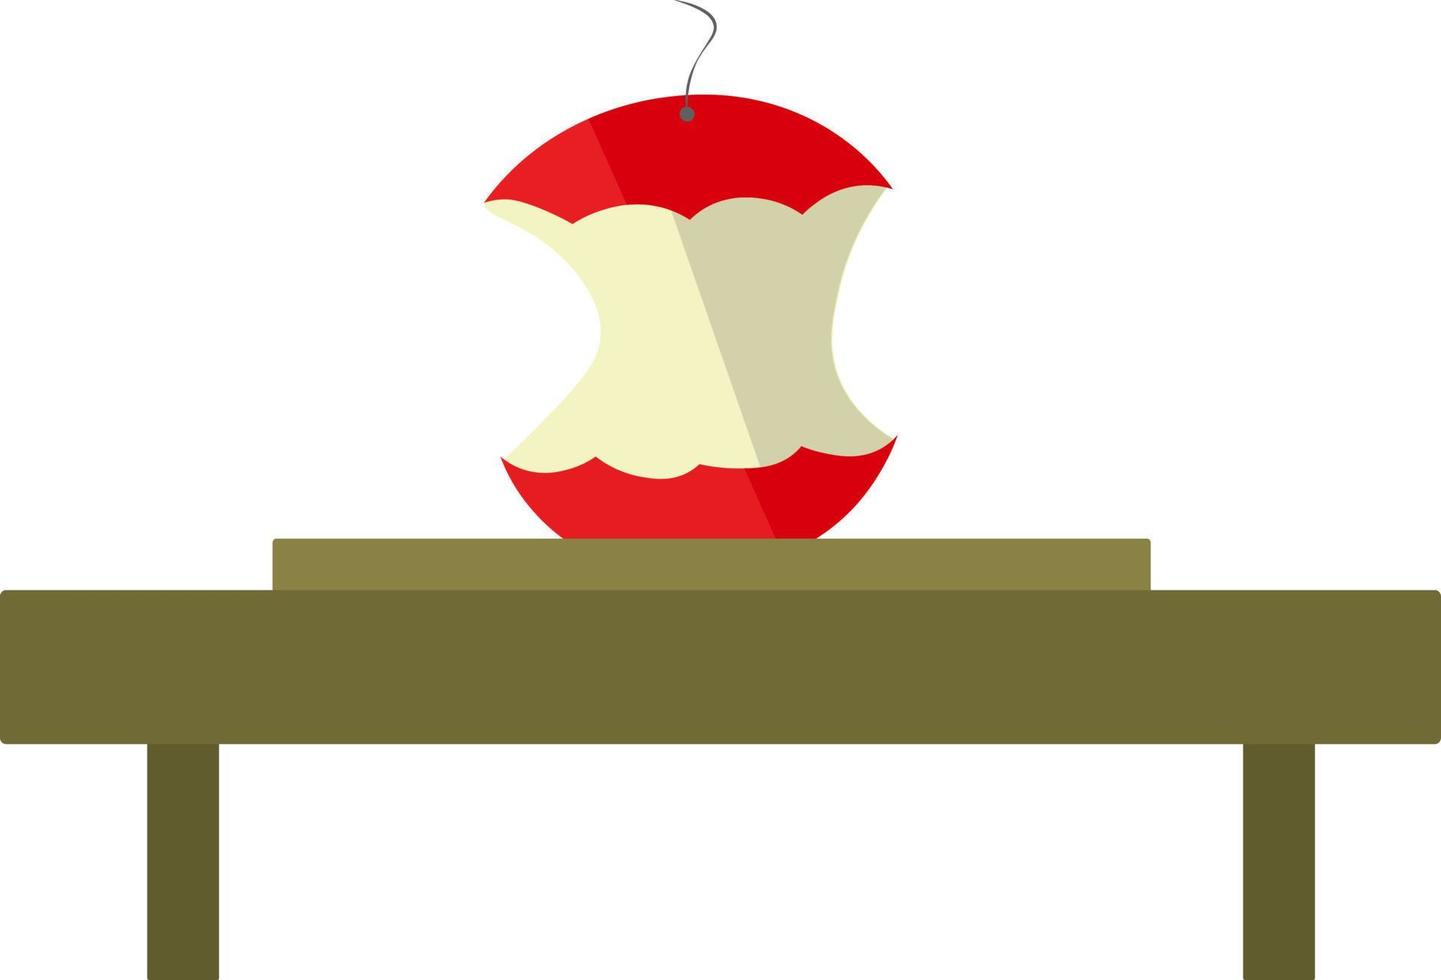 Bitten apple, illustration, vector on white background.